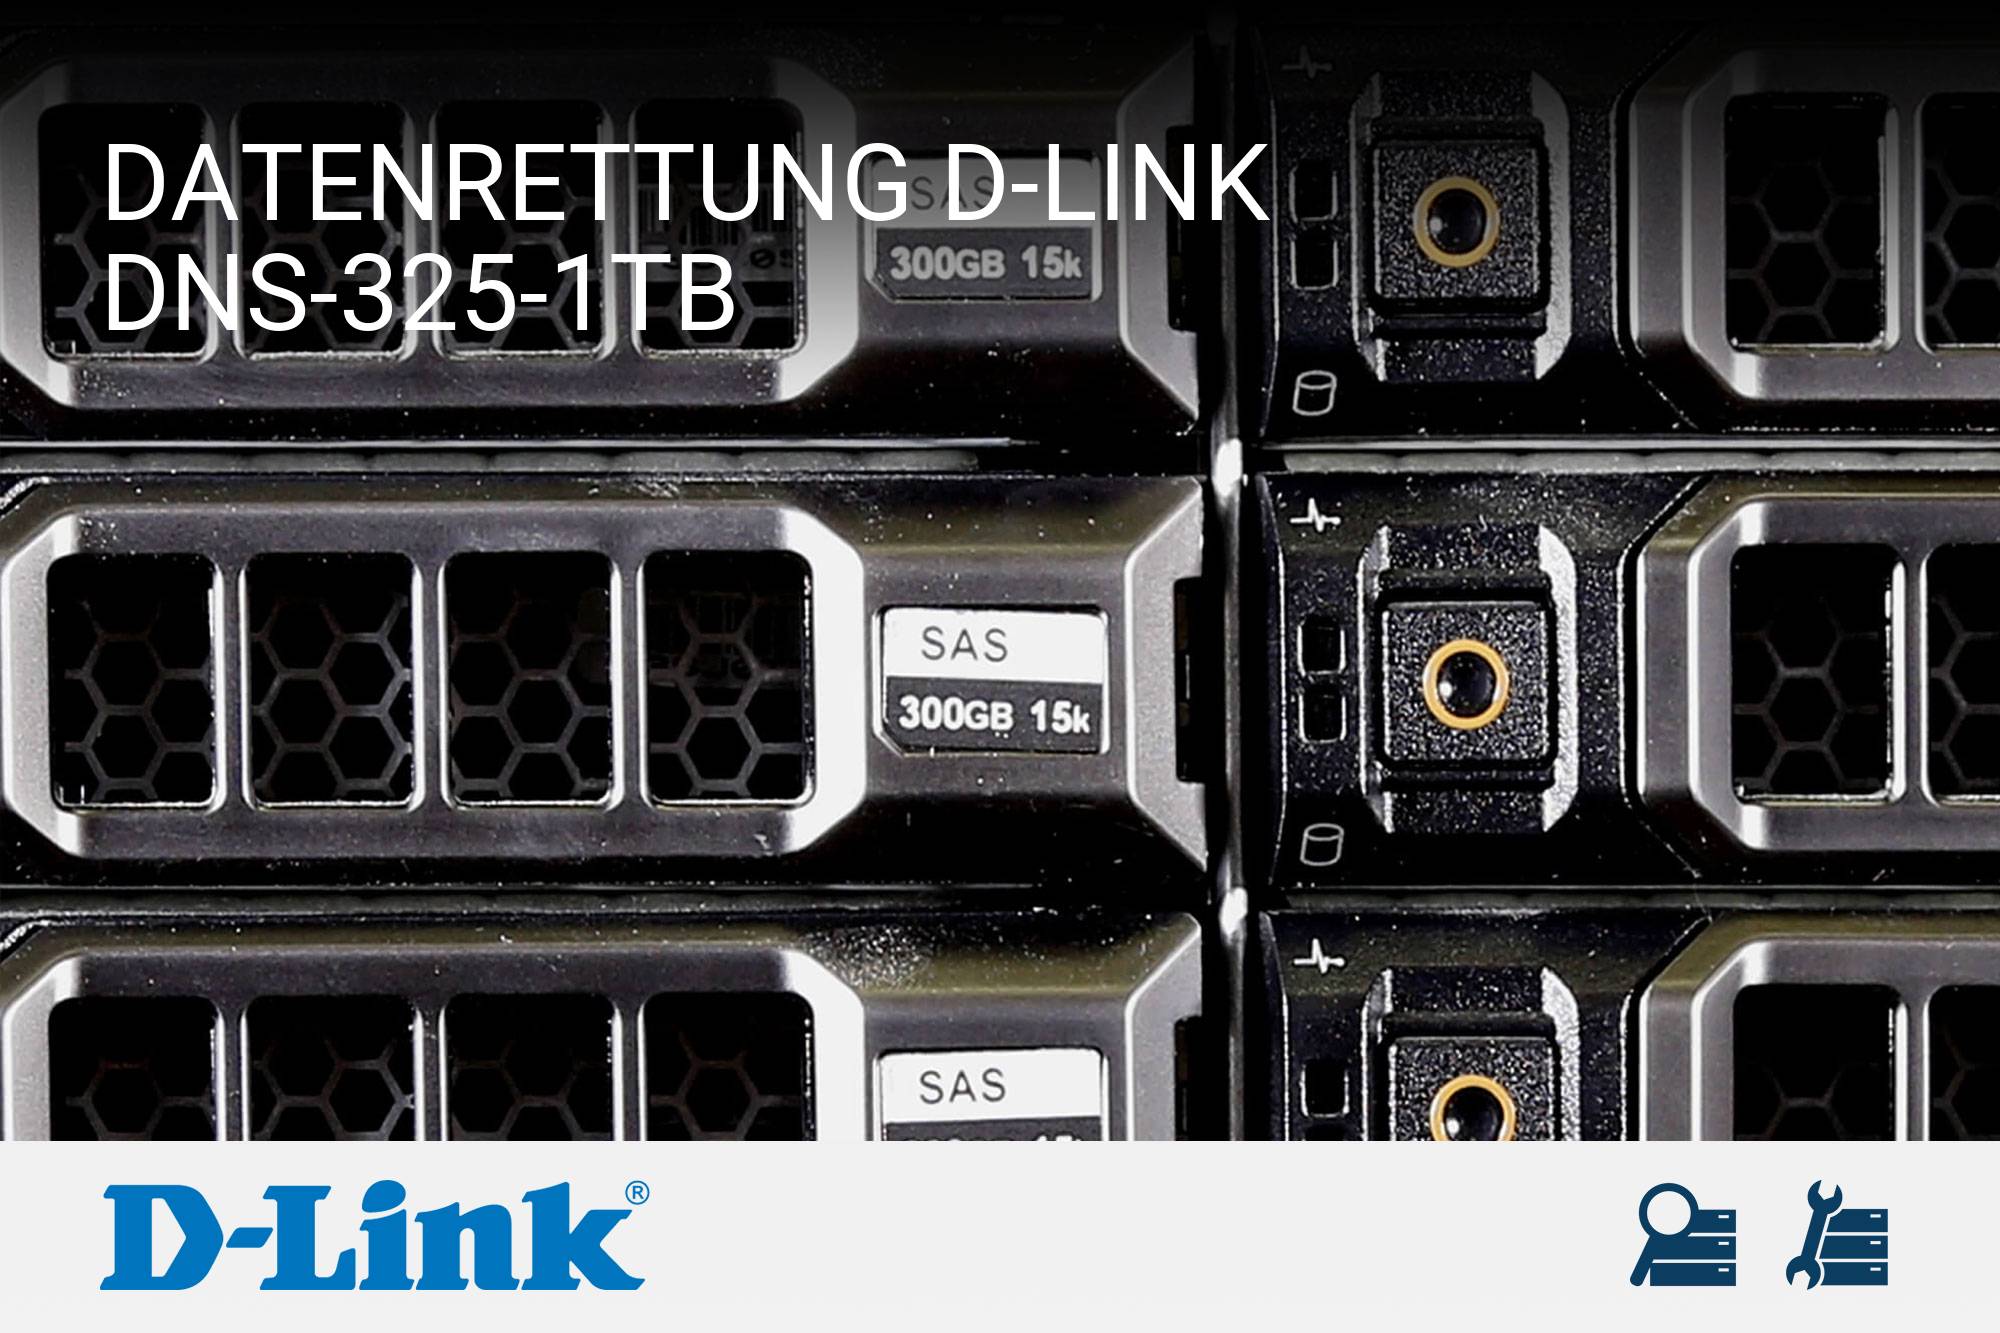 D-Link DNS-325-1TB